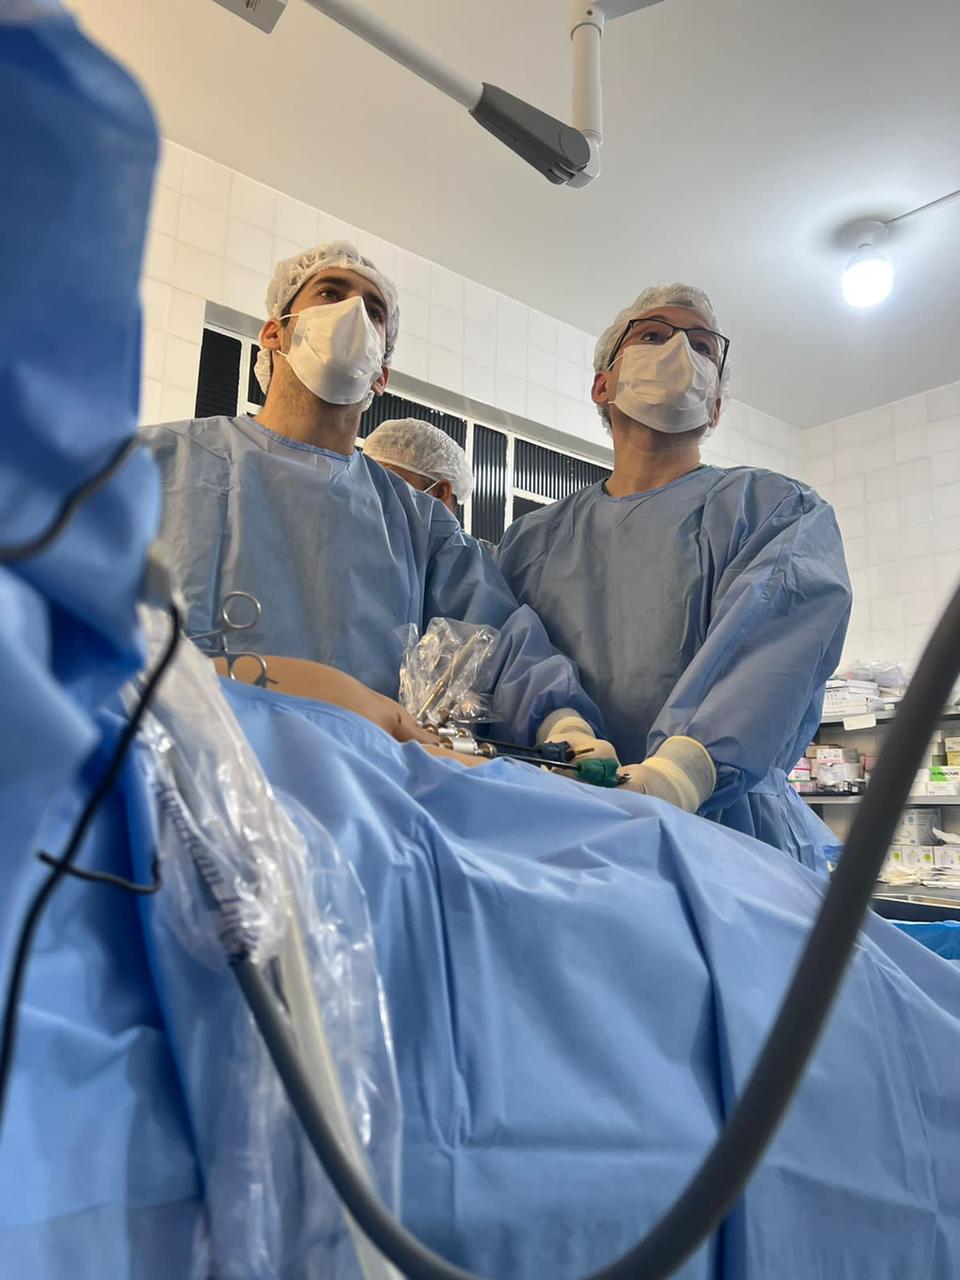 Hospital de Demerval Lobão realiza cirurgias por videolaparoscopia (Foto: Divulgação)Hospital de Demerval Lobão realiza cirurgias por videolaparoscopia (Foto: Divulgação)